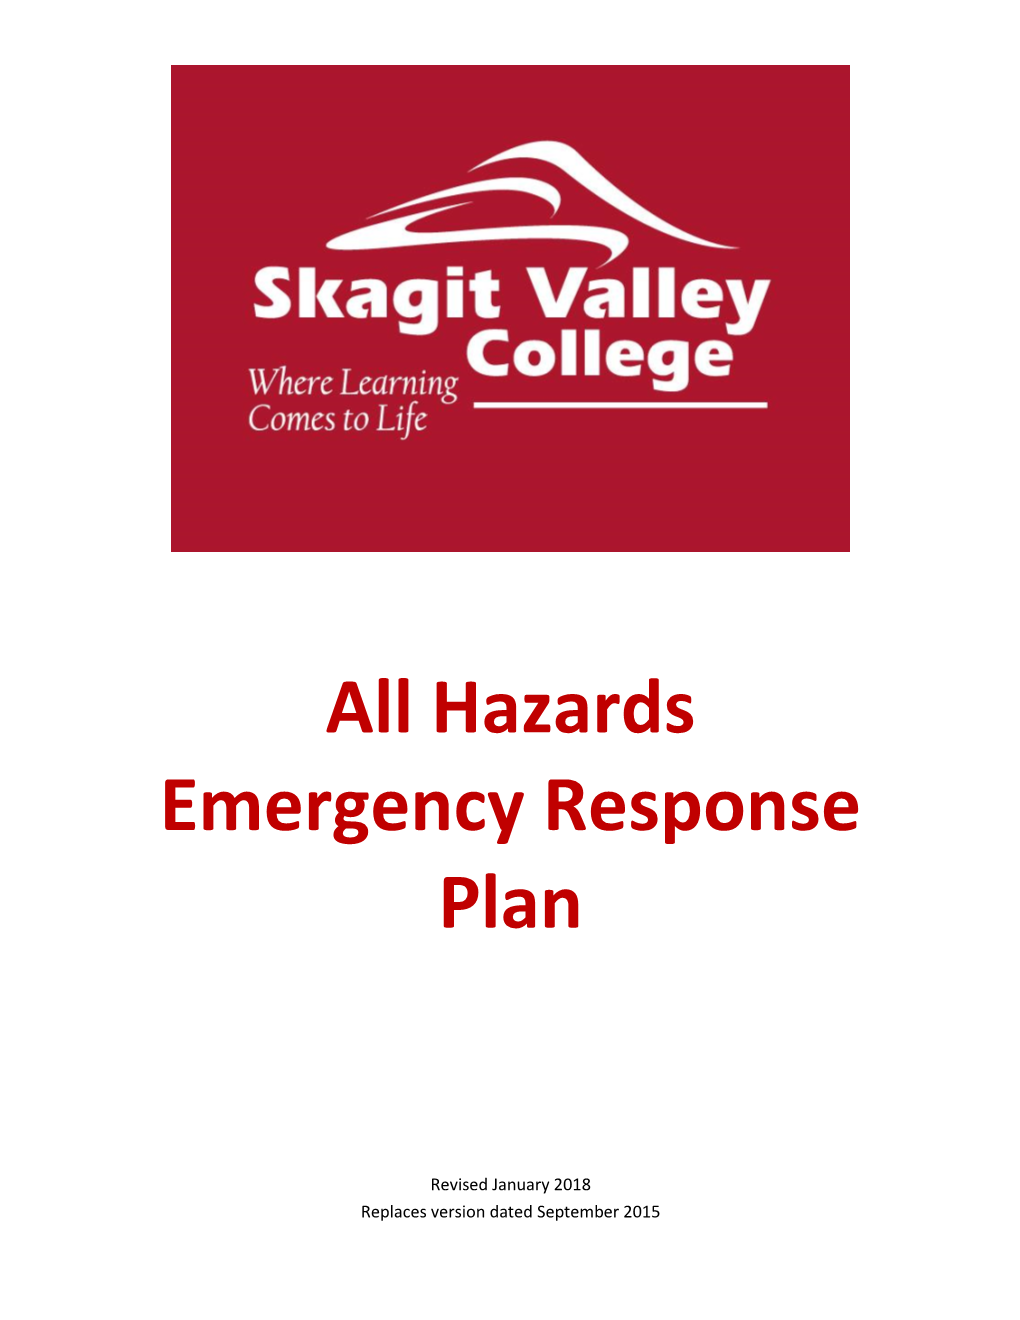 Hazards Emergency Response Plan